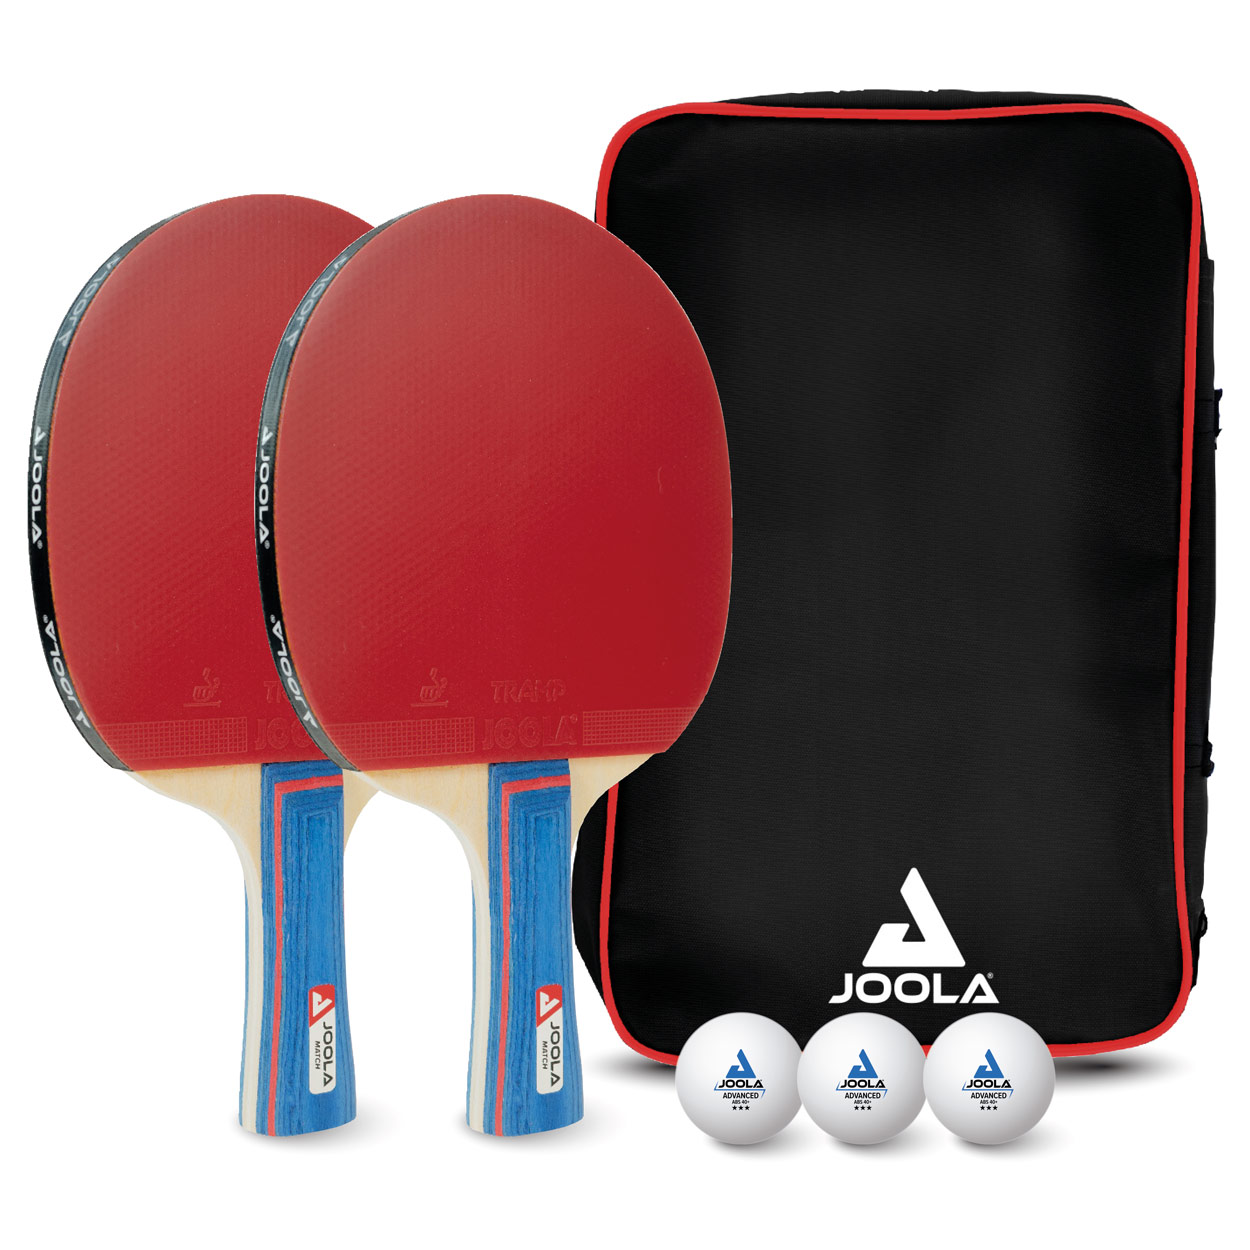 JOOLA Tischtennis-Set DUO, 2 TT-Schläger + 3 TT-Bälle günstig online kaufen  | Sport-Tec